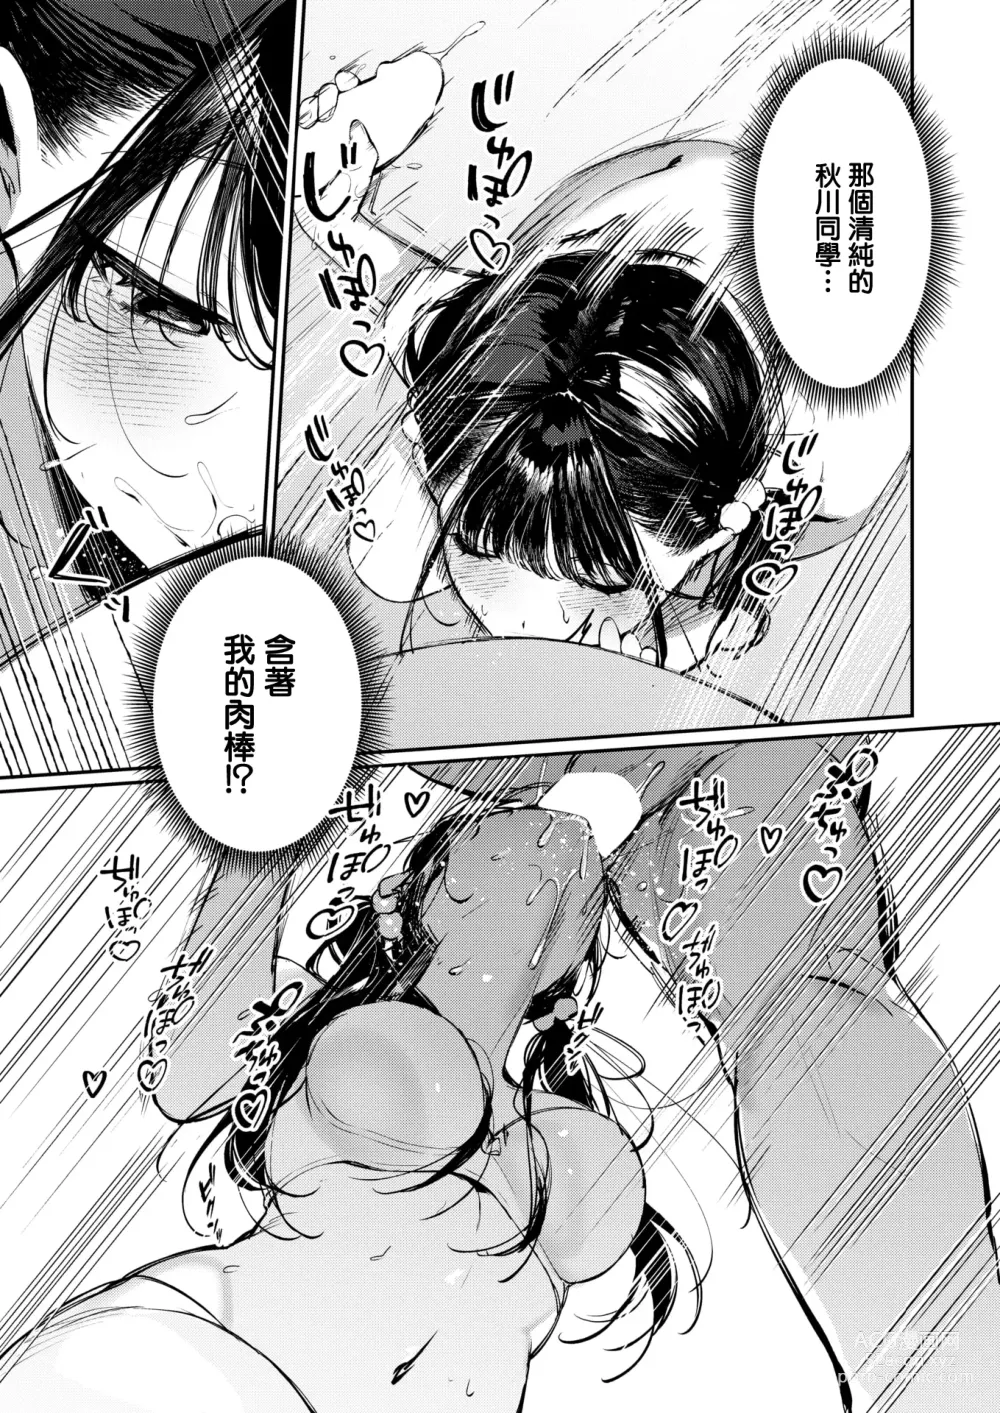 Page 12 of manga Doutei Reaper Sotsugyou Ryokou